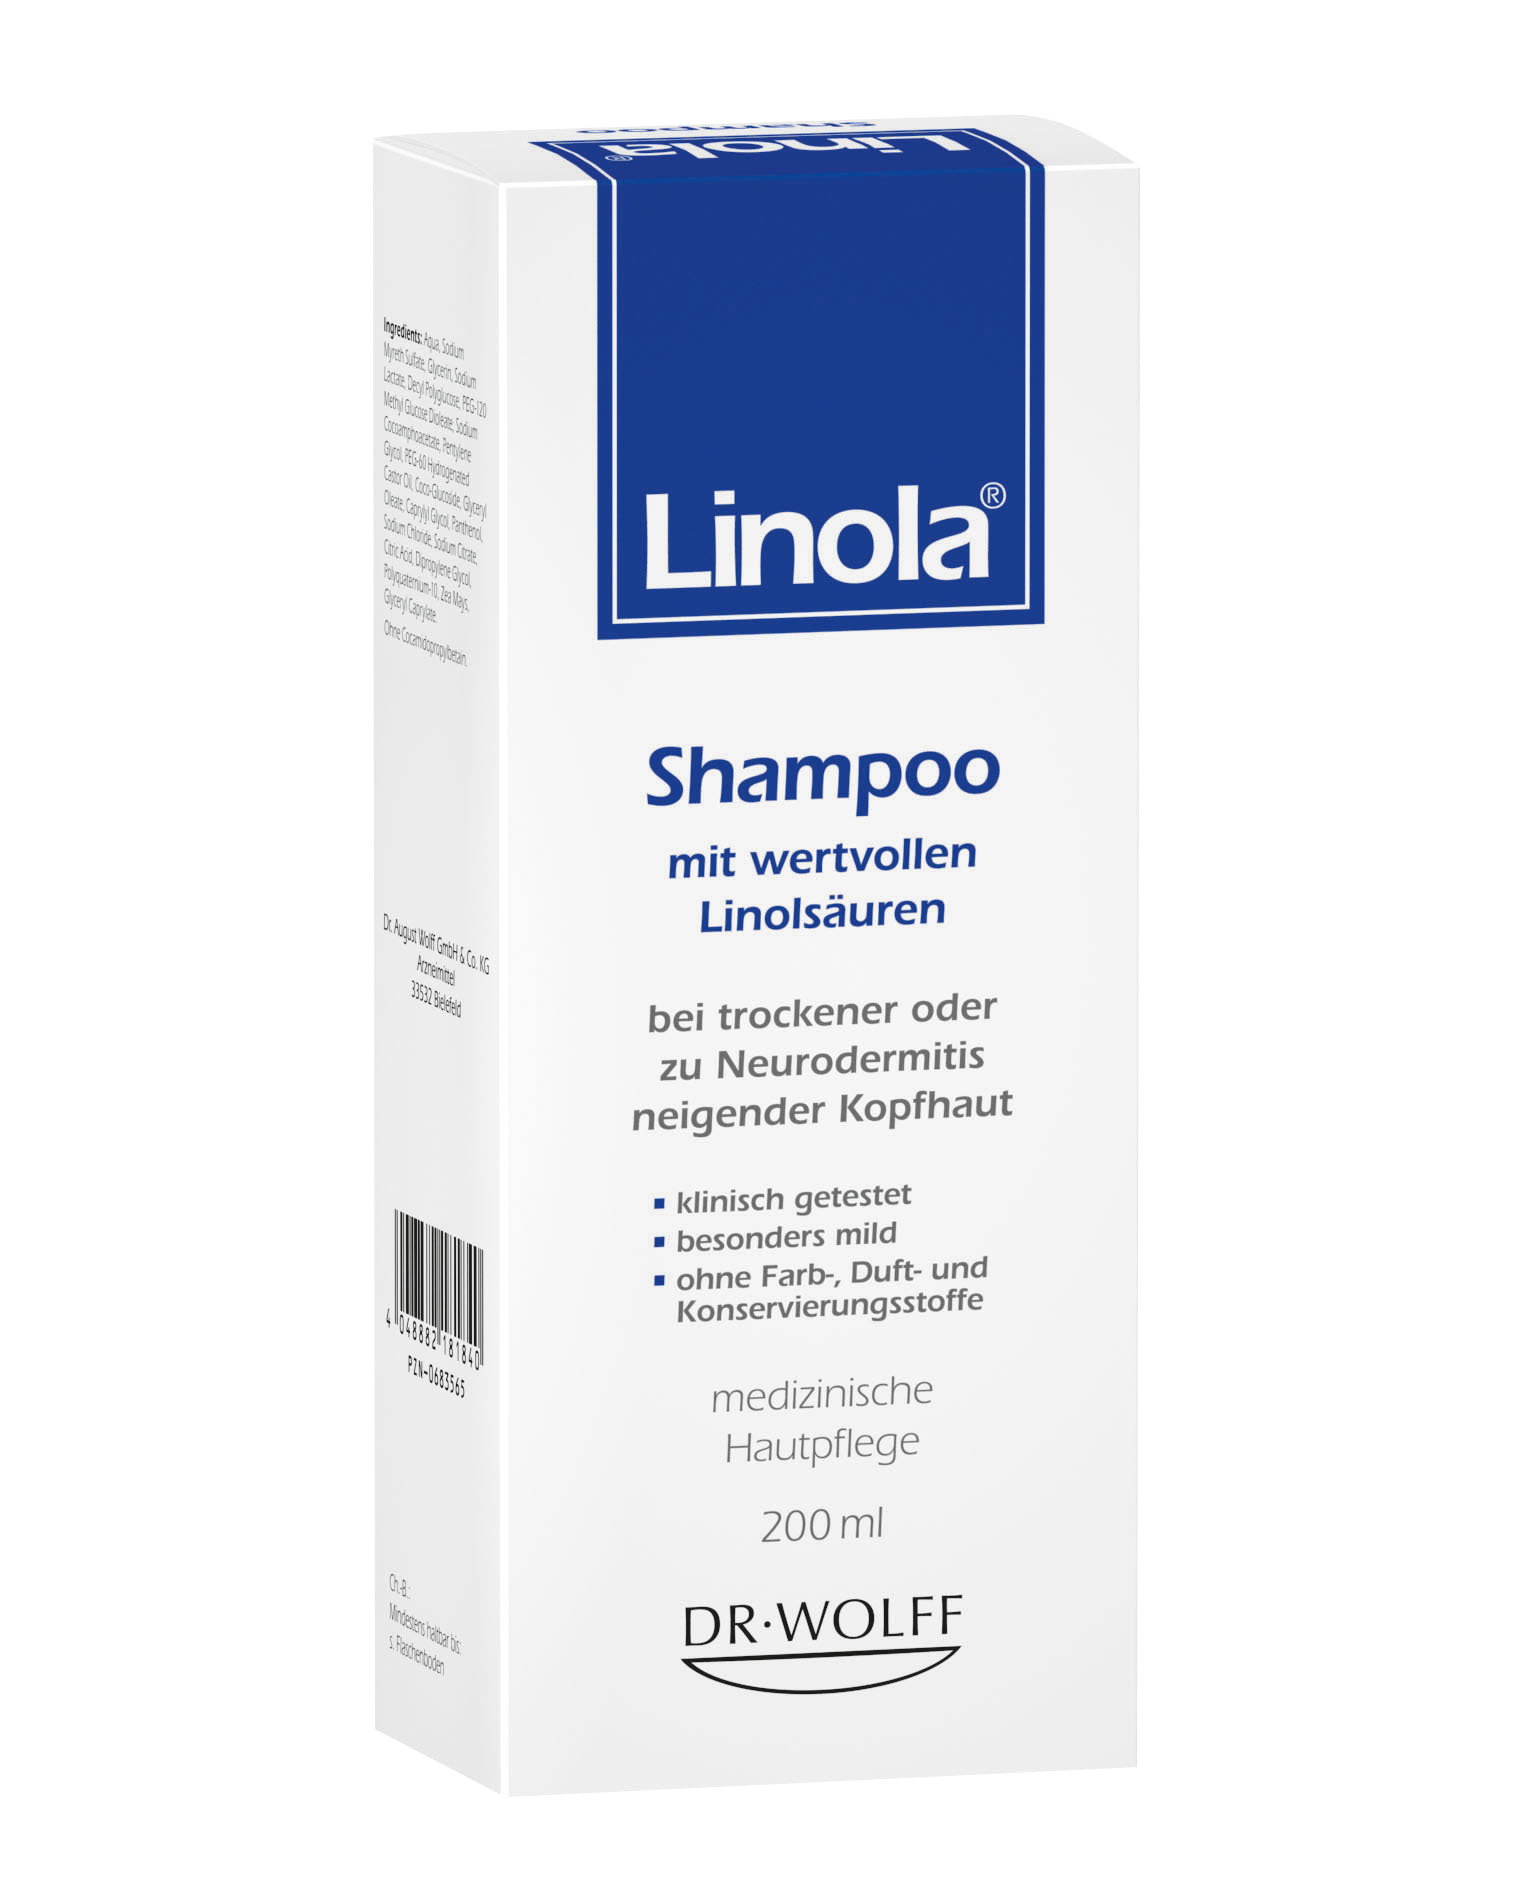 LINOLA Shampoo 200ml